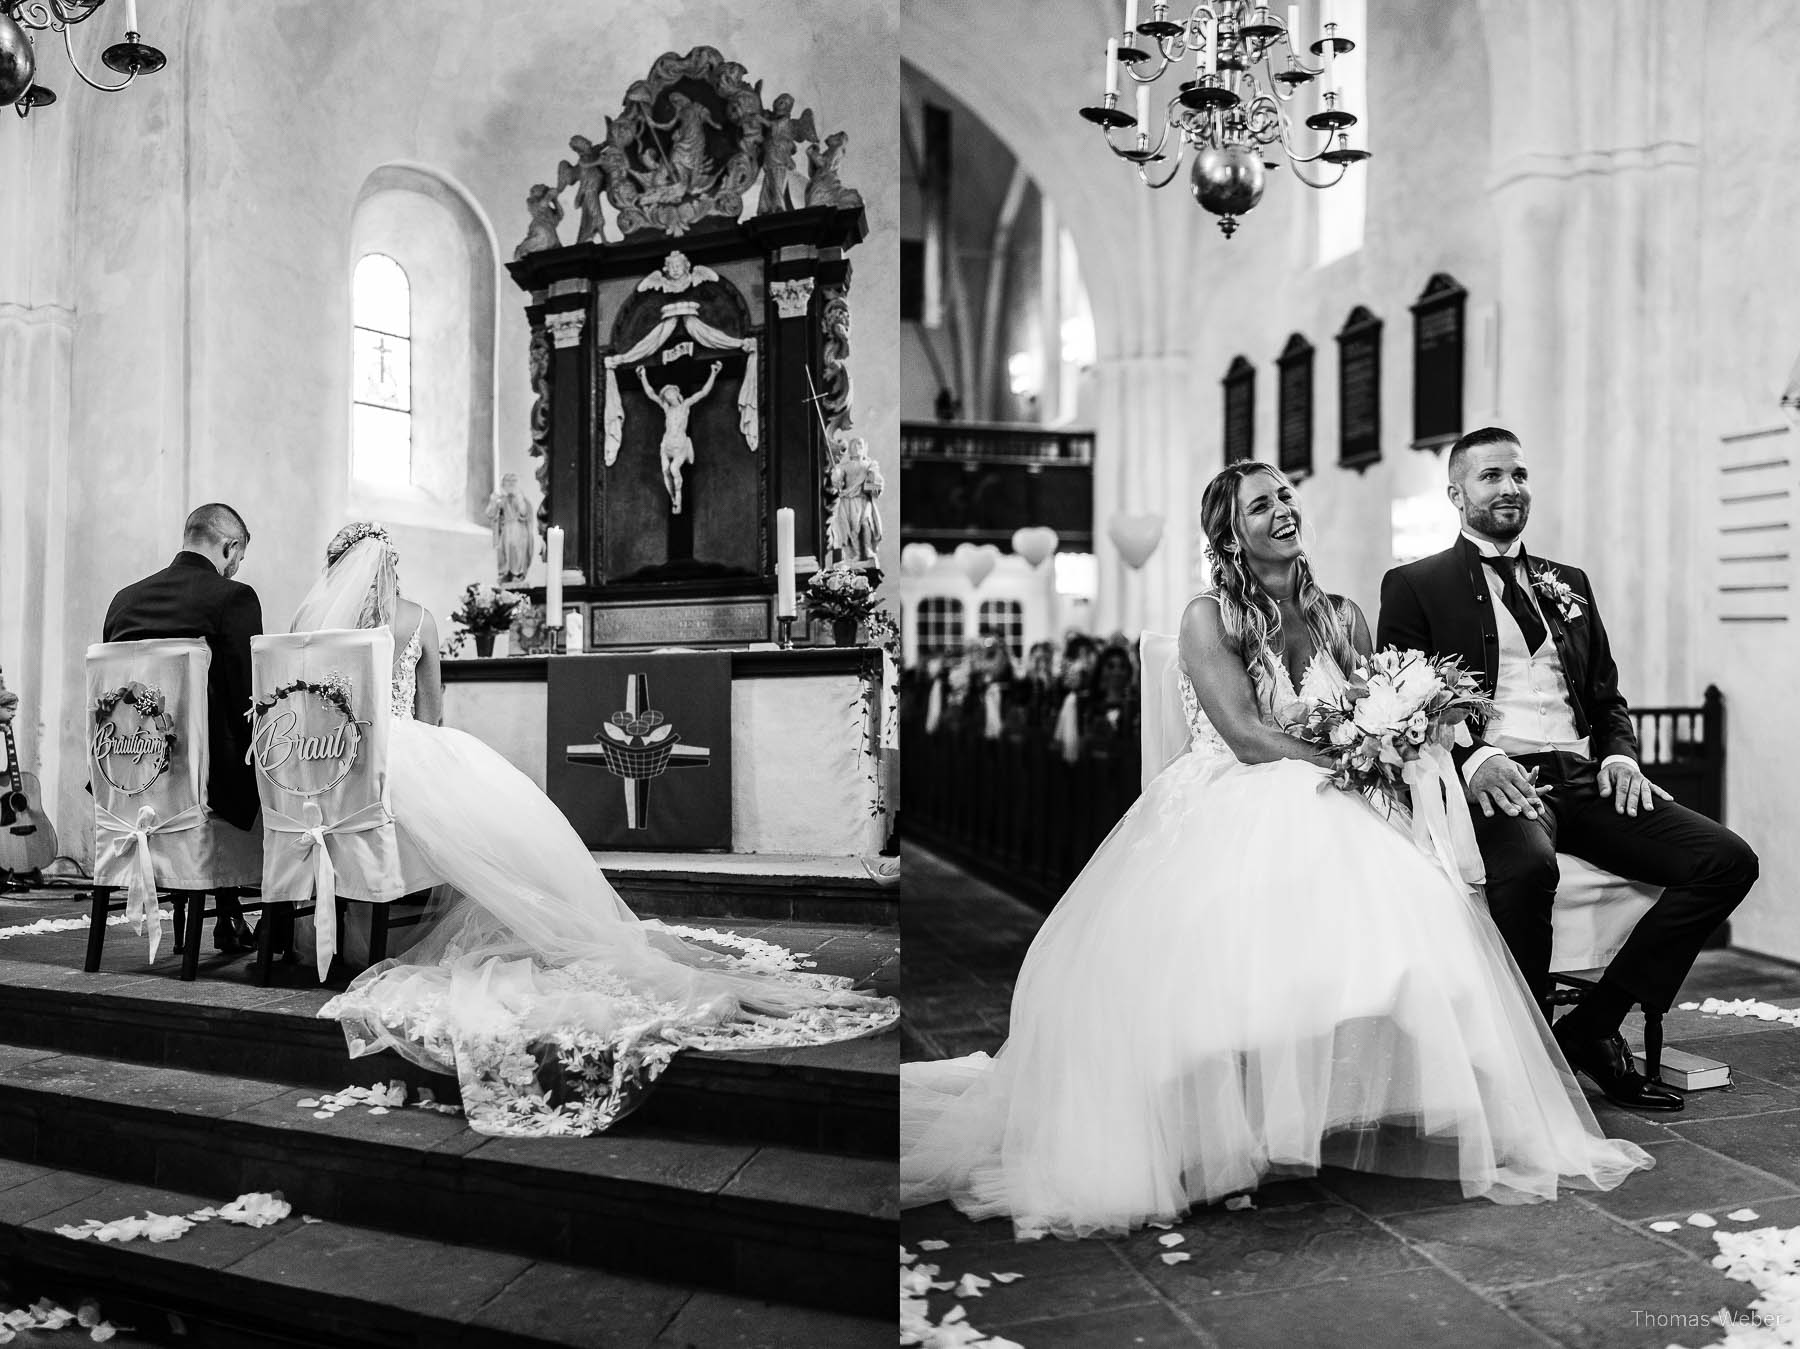 Kirchliche Trauung an der Nordsee, Hochzeitsfotograf Thomas Weber